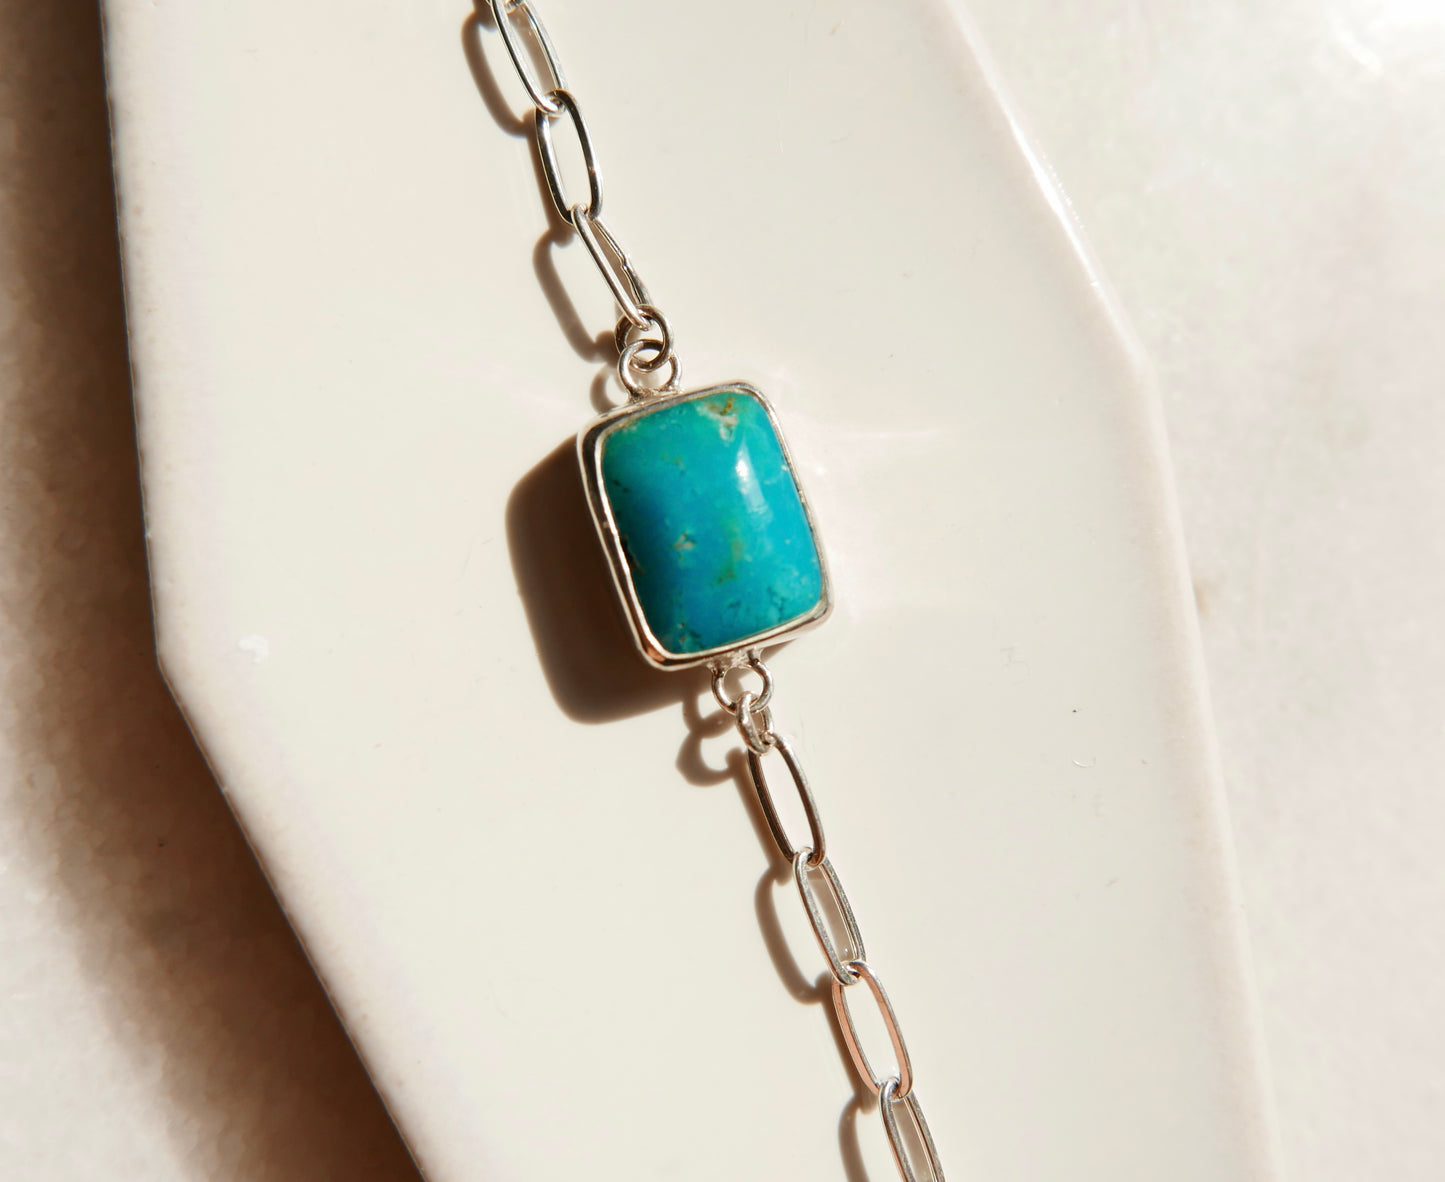 Turquoise Mountain Bracelet